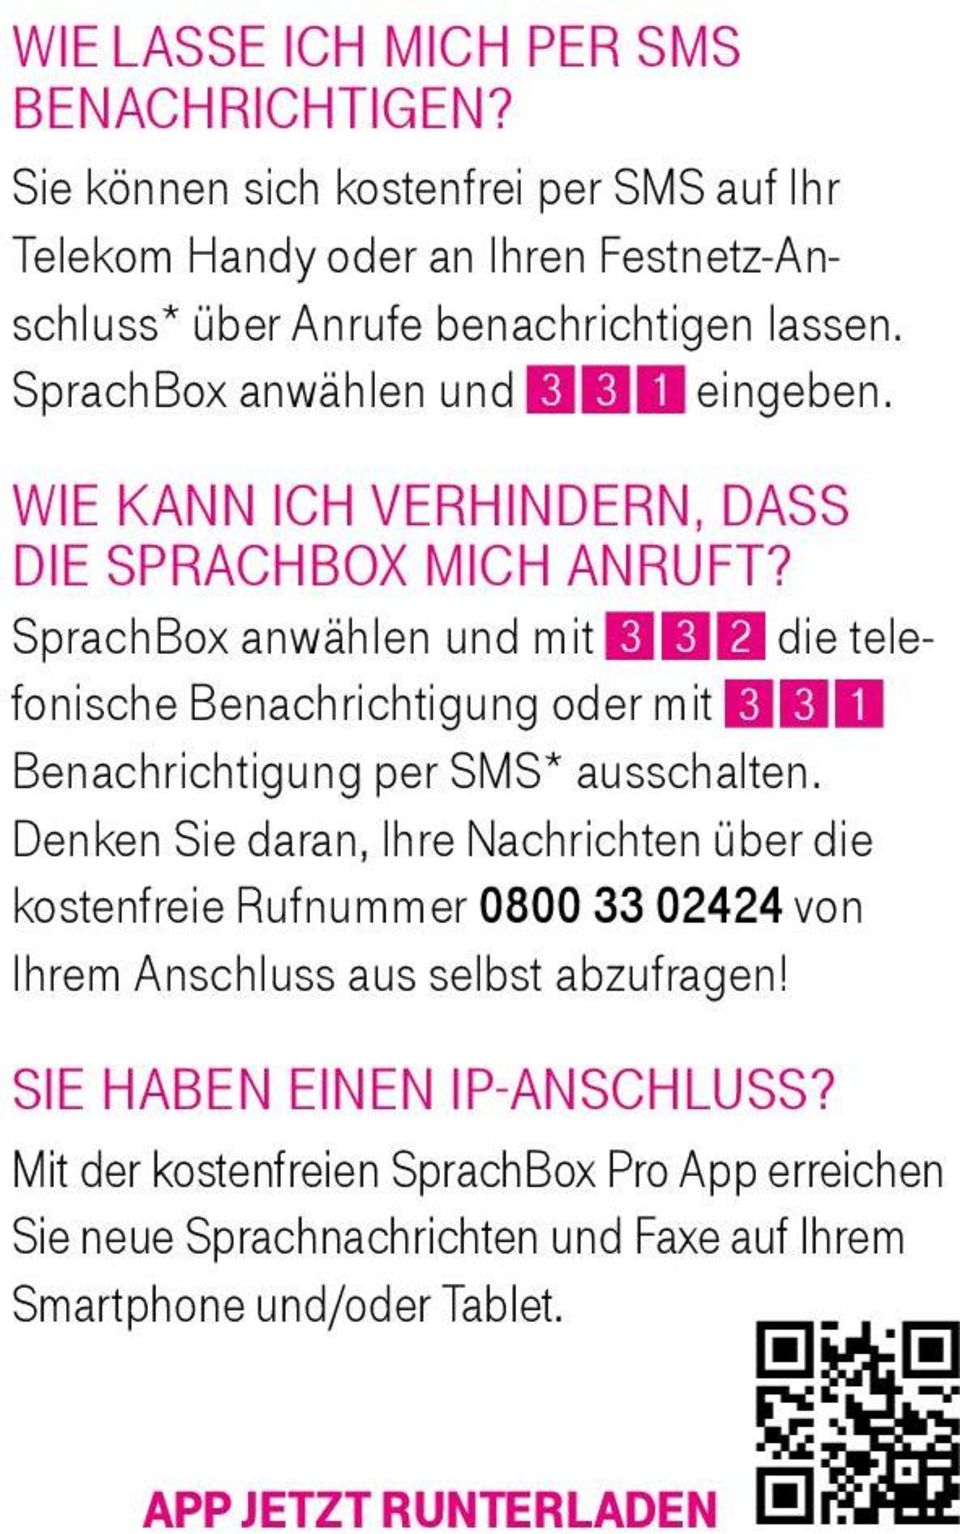 SprachBox anwählen und mit 3 3 2 die telefonische Benachrichtigung oder mit 3 3 1 Benachrichtigung per SMS* ausschalten.